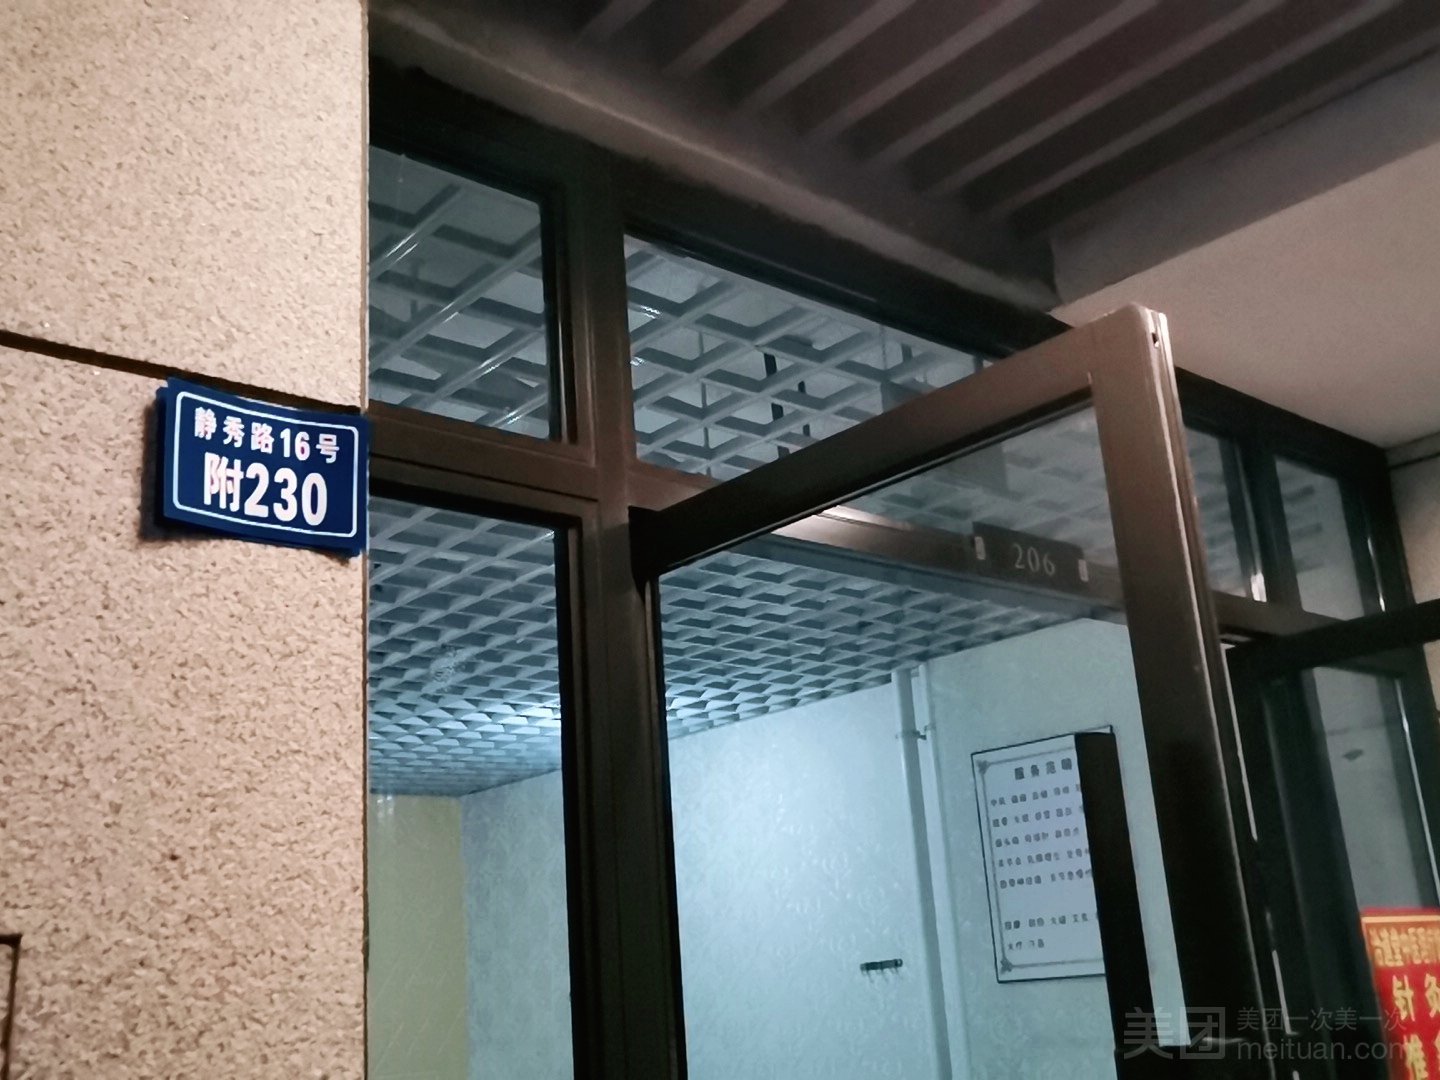 锦江区静秀路16号锦官阁一号门旁电梯上二楼附230号